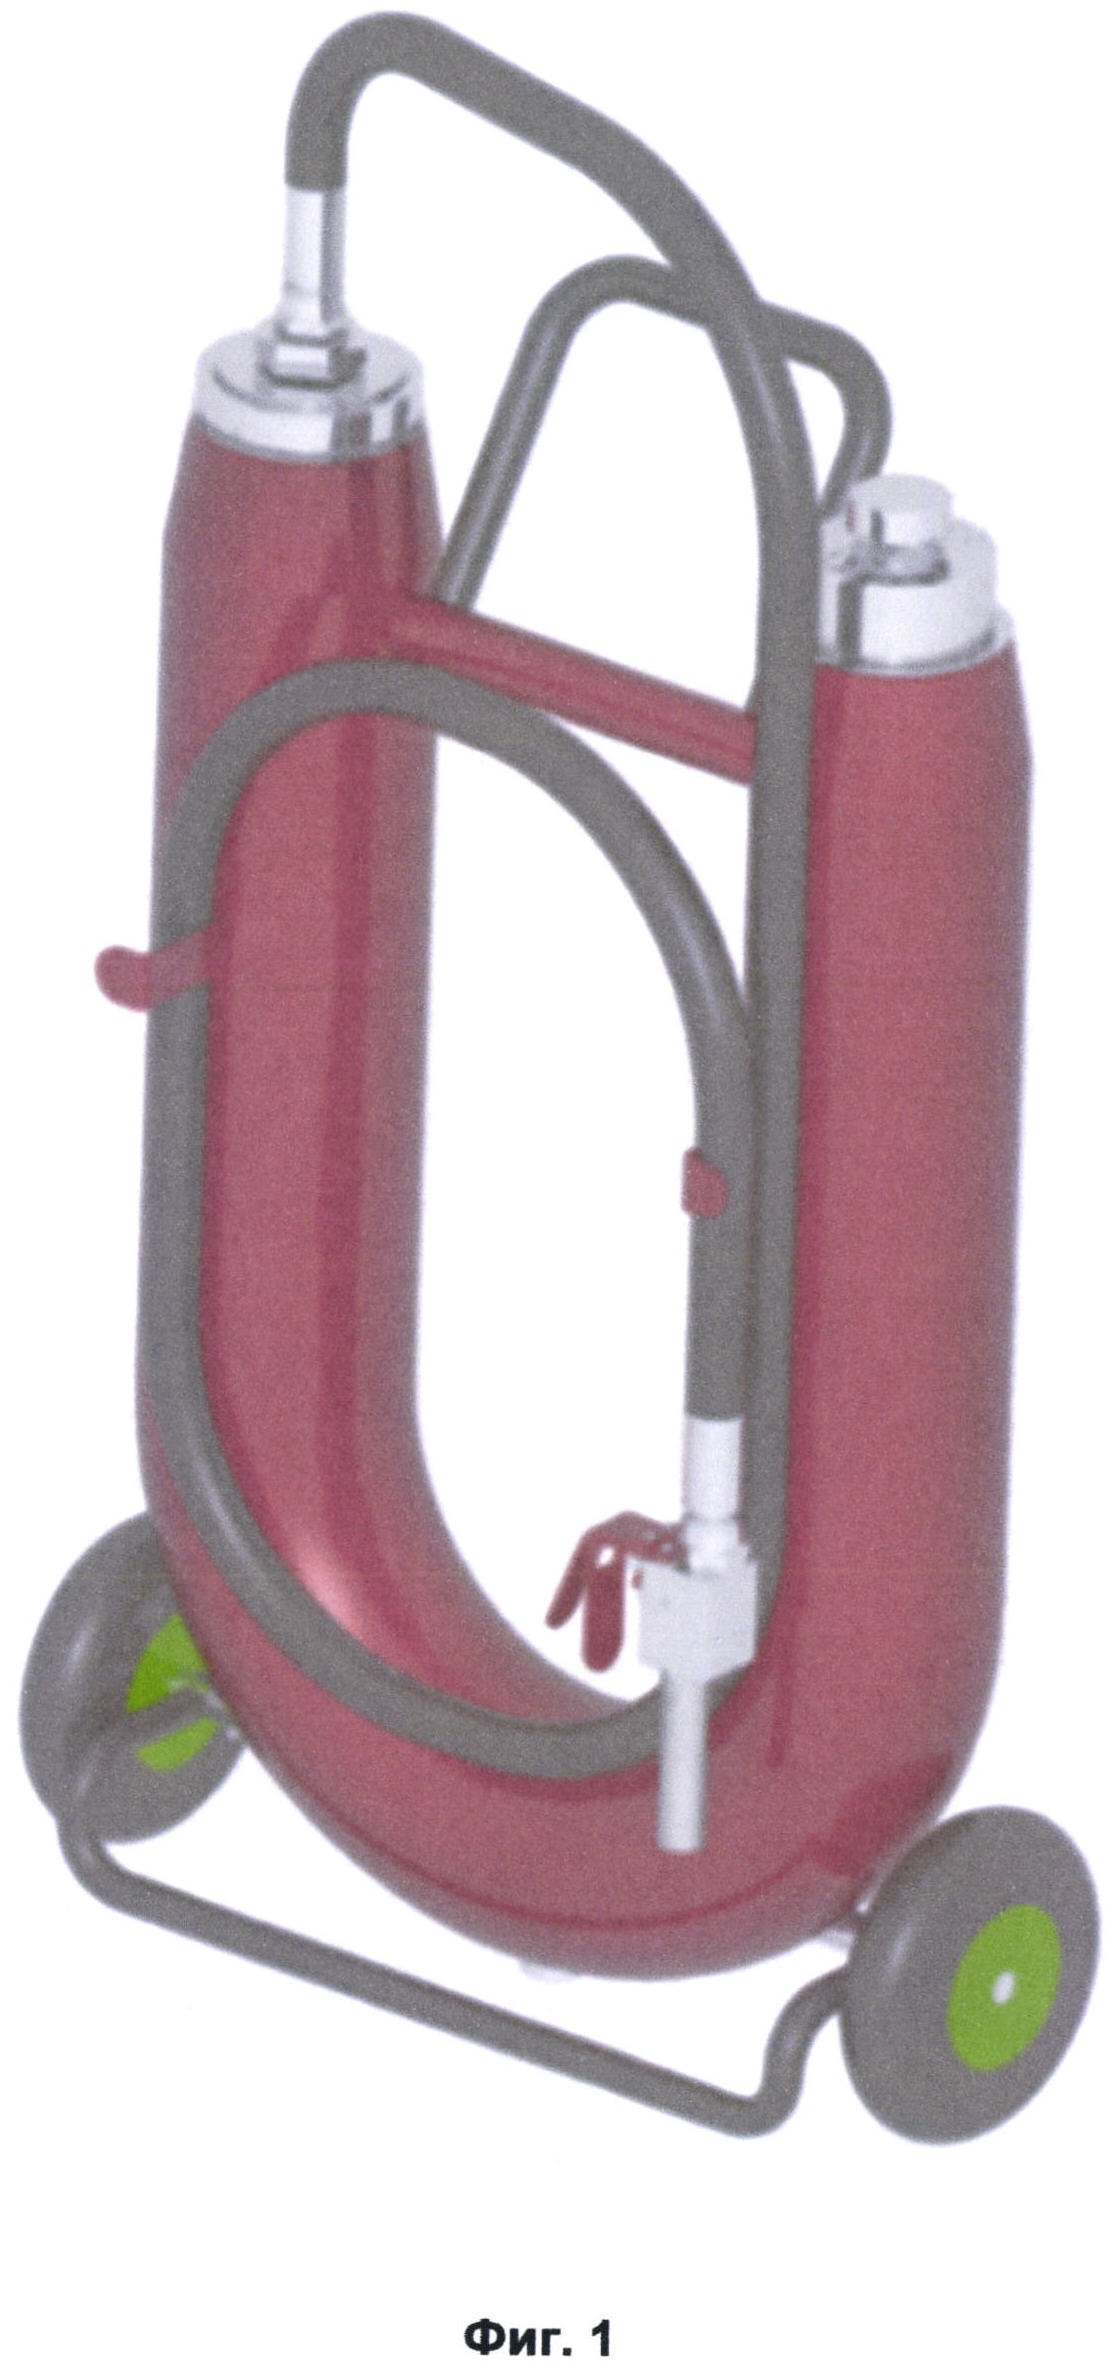 Огнетушитель для взрывопожаропредотвращения и твердопенного тушения с запорно-пусковым устройством и стволом